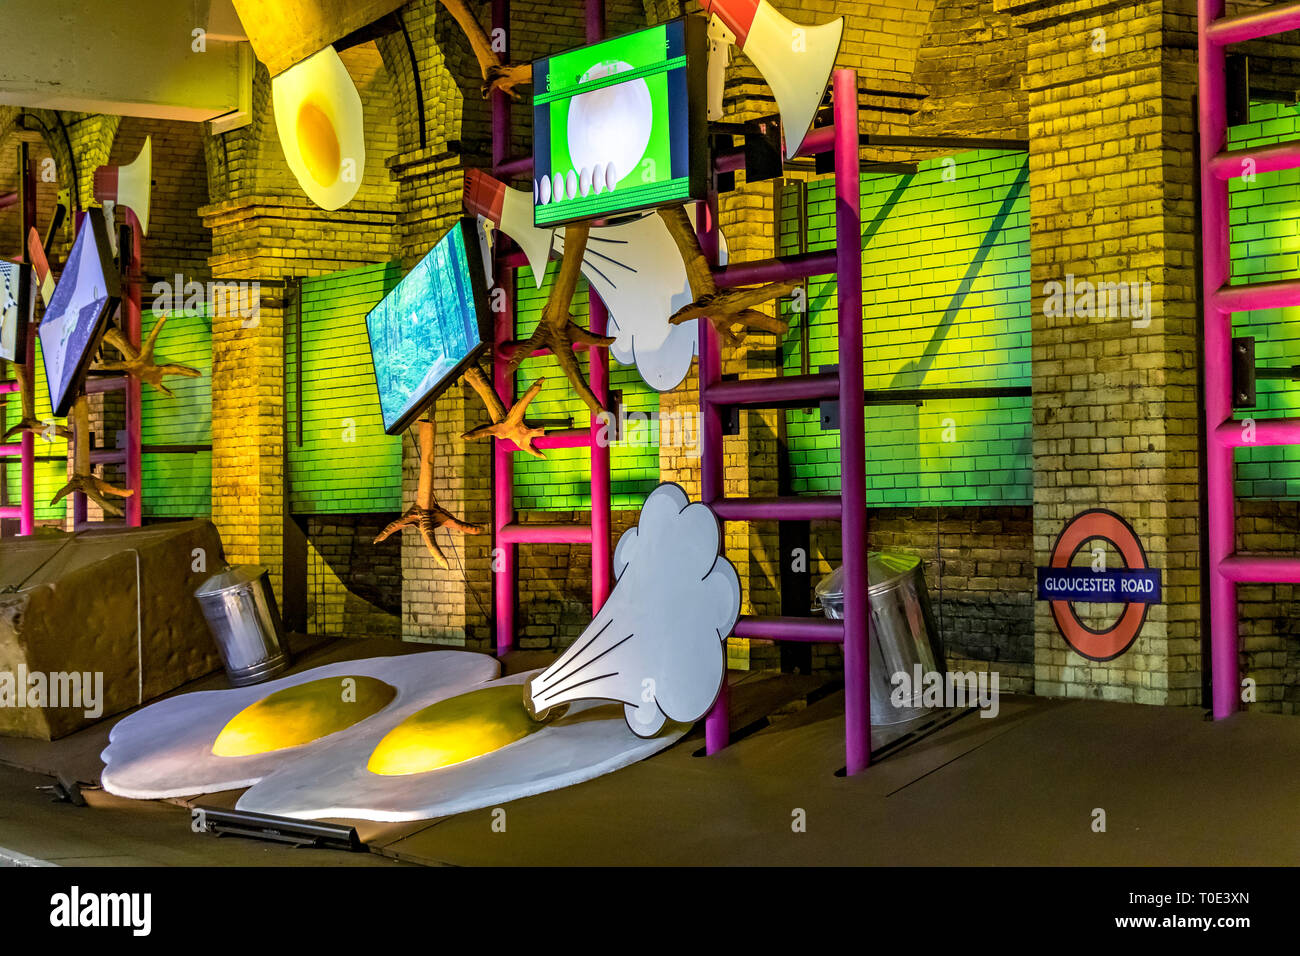 Installazione di arte Uova giganti da Heather Phillipson alla stazione della metropolitana di Gloucester Road, Londra, arte della tecnica sul progetto della metropolitana Foto Stock